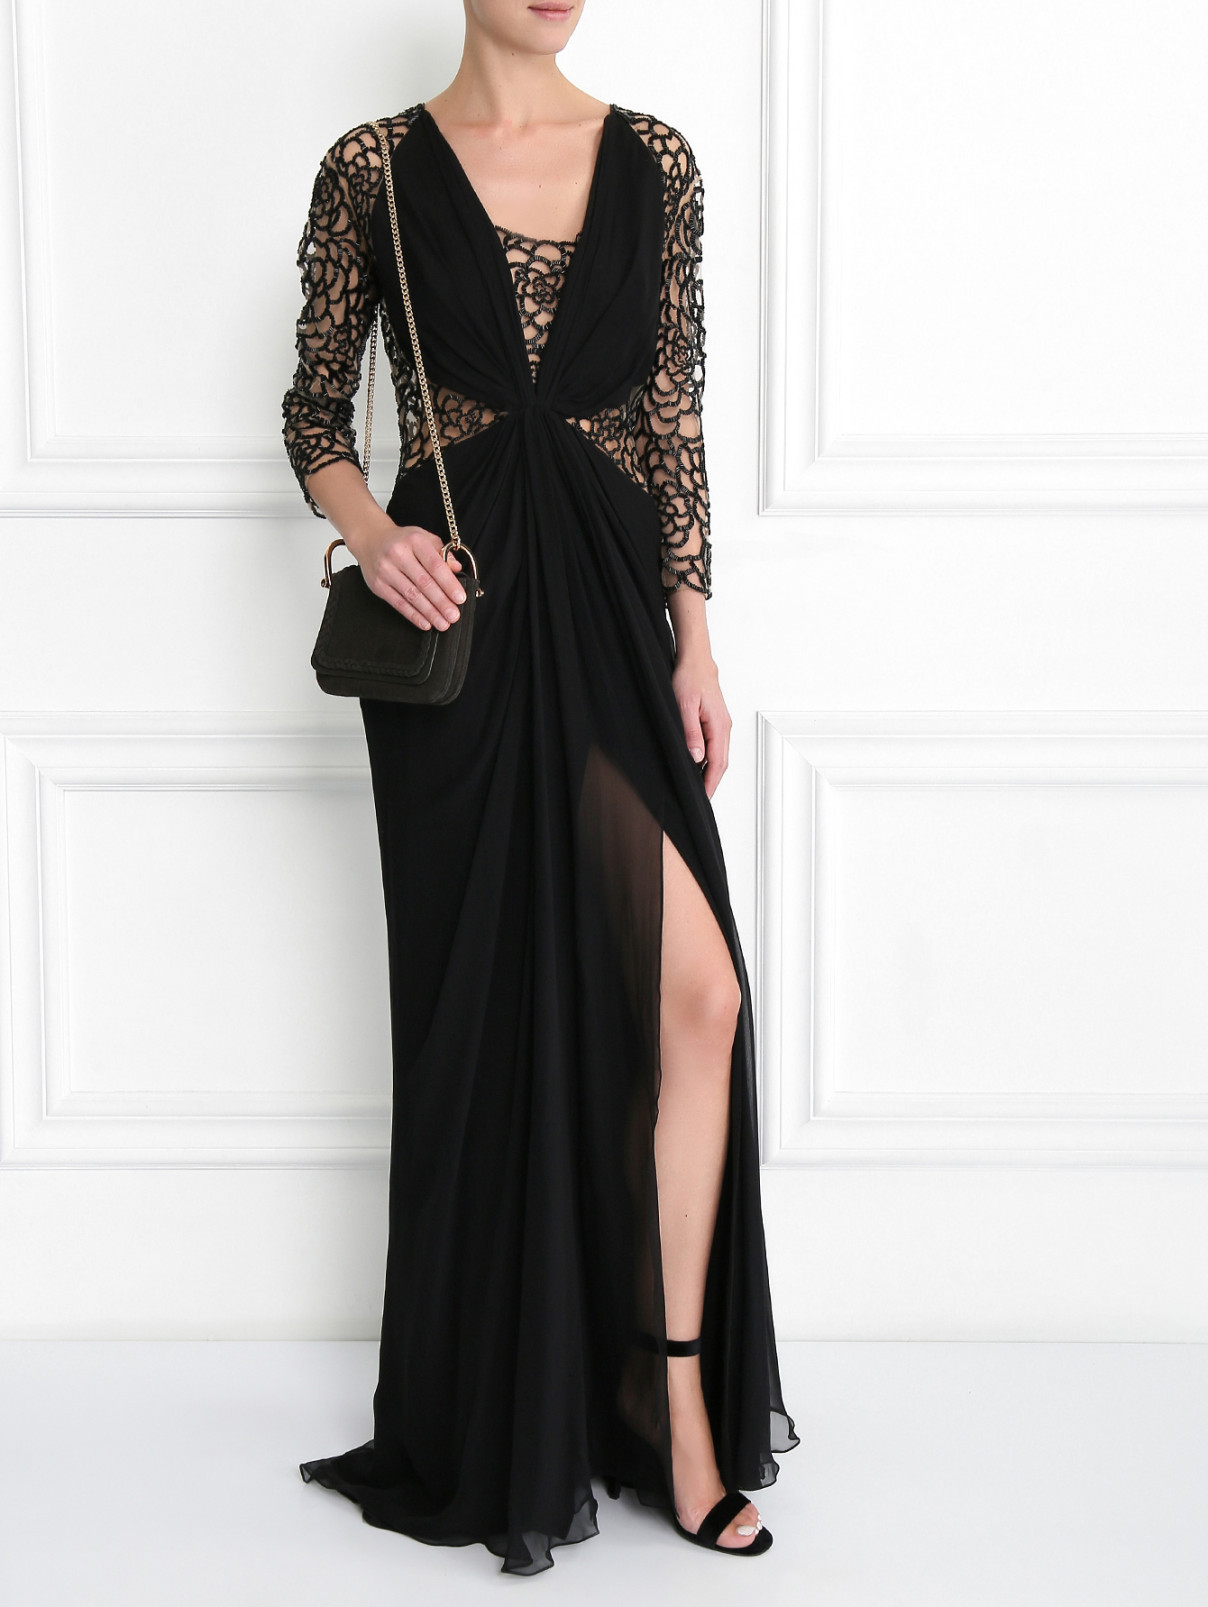 Платье-макси из шелка декорированное бисером Zuhair Murad  –  Модель Общий вид  – Цвет:  Черный